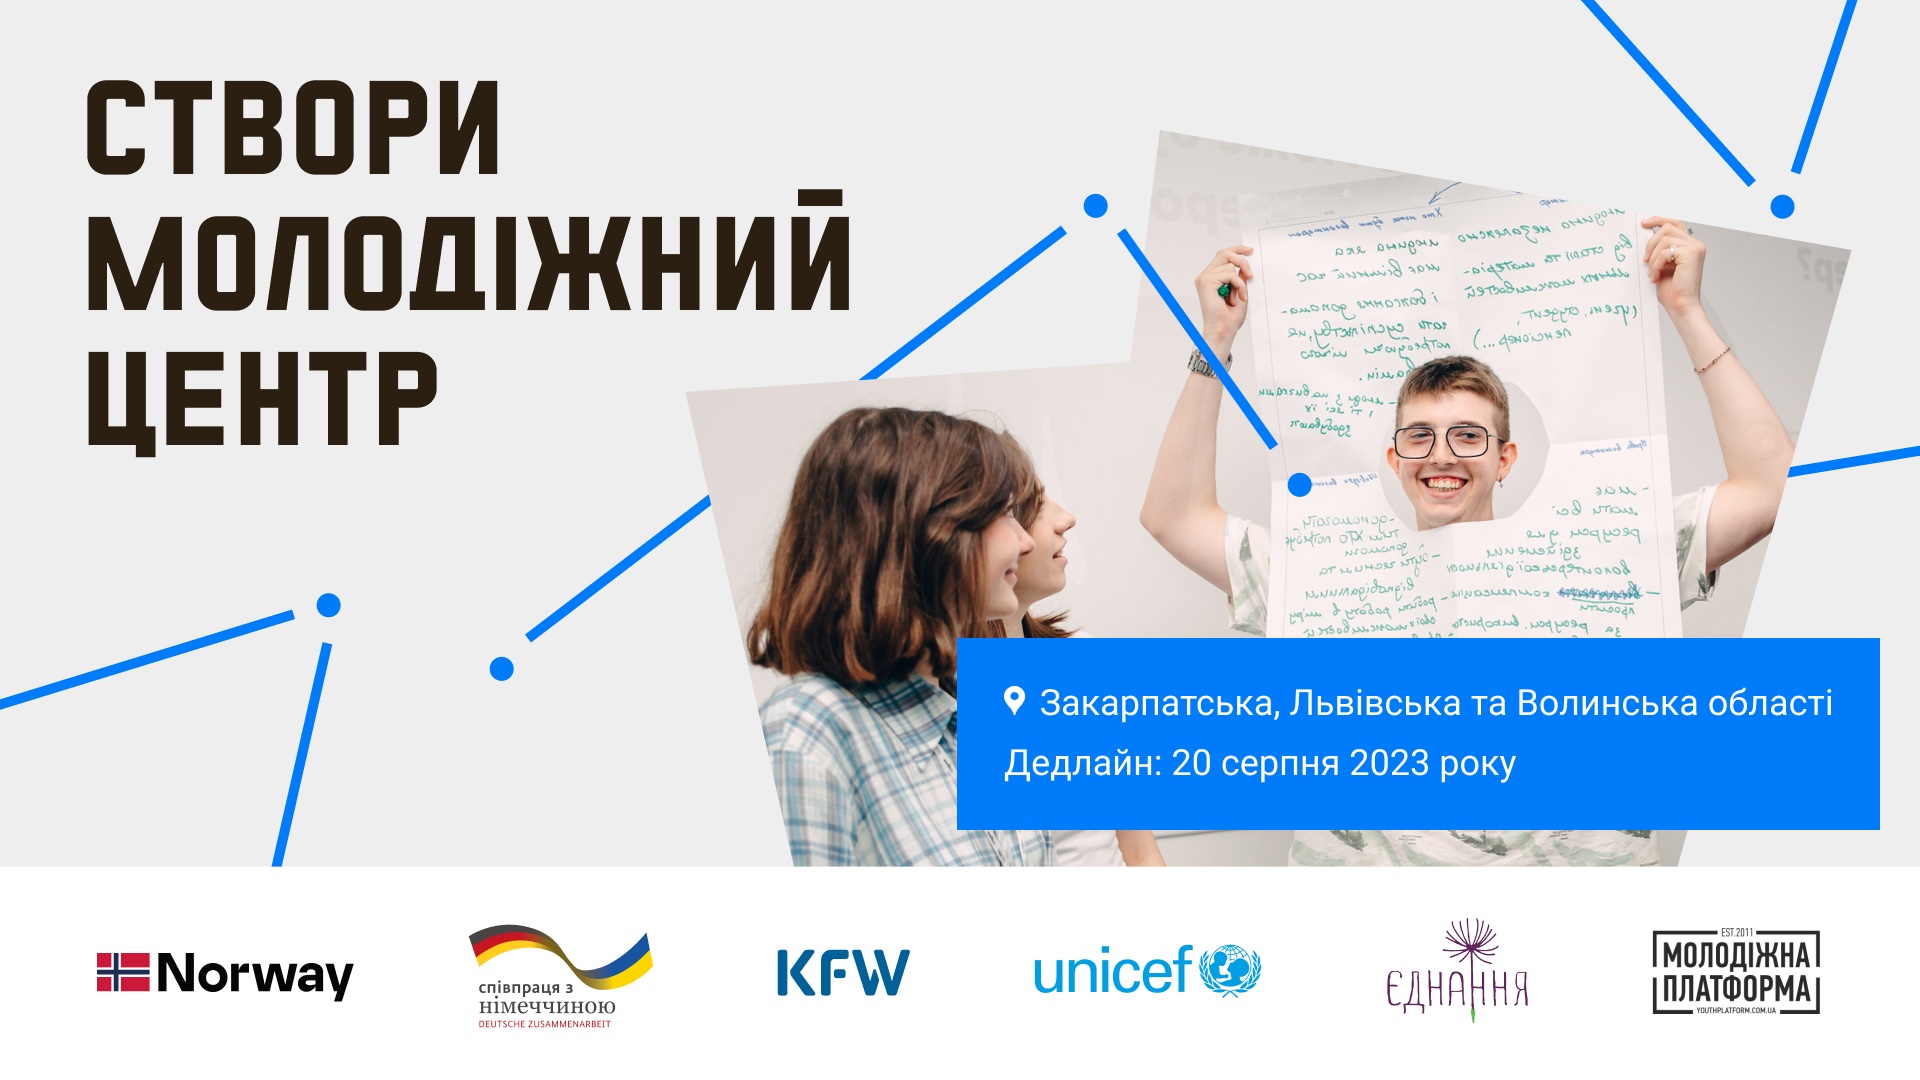 ГО “Молодіжна платформа” відкриває конкурс на створення молодіжних центрів у Закарпатській, Львівській та Волинській областях